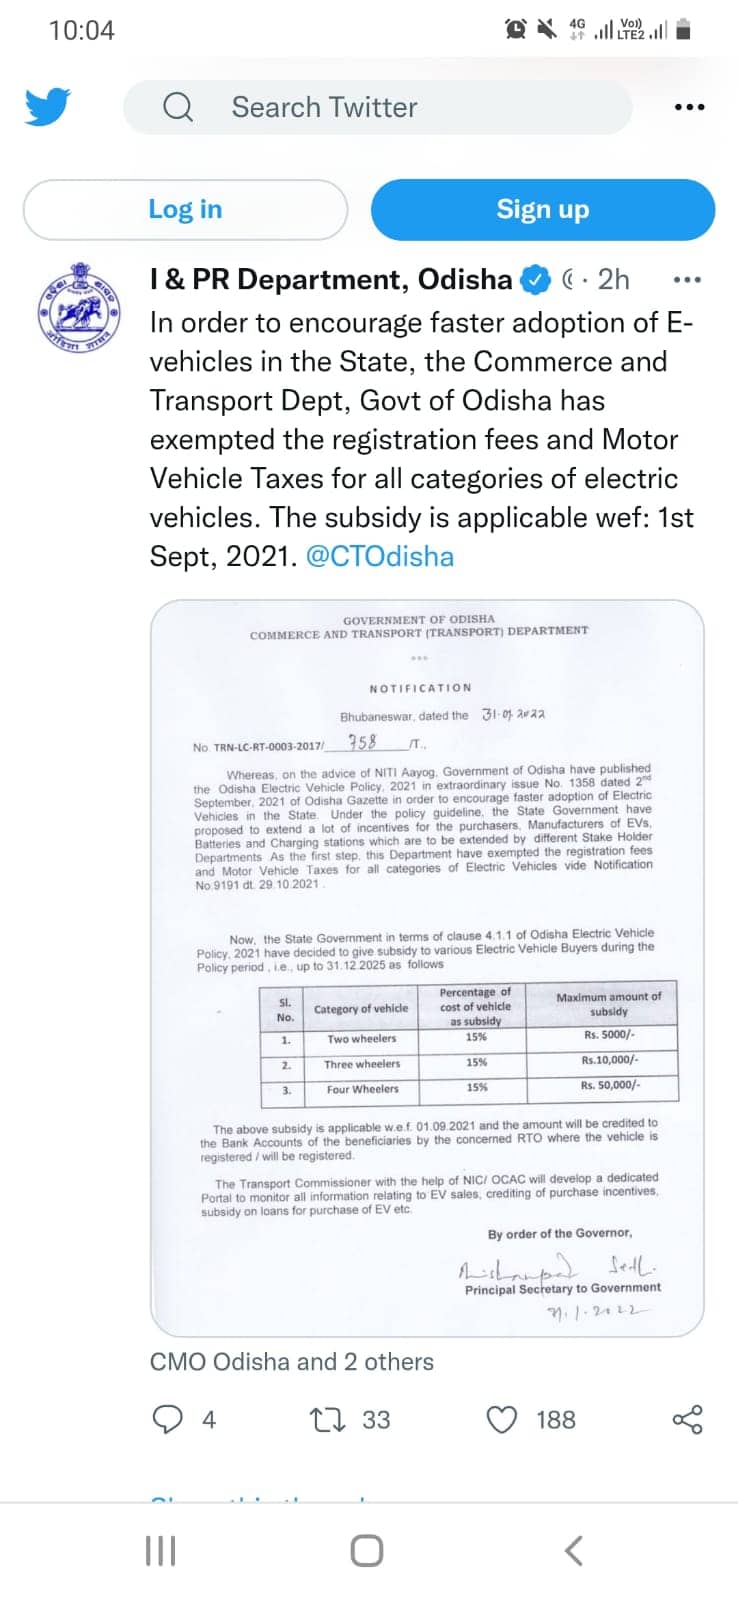 Odisha Electric Vehicle Policy 2021